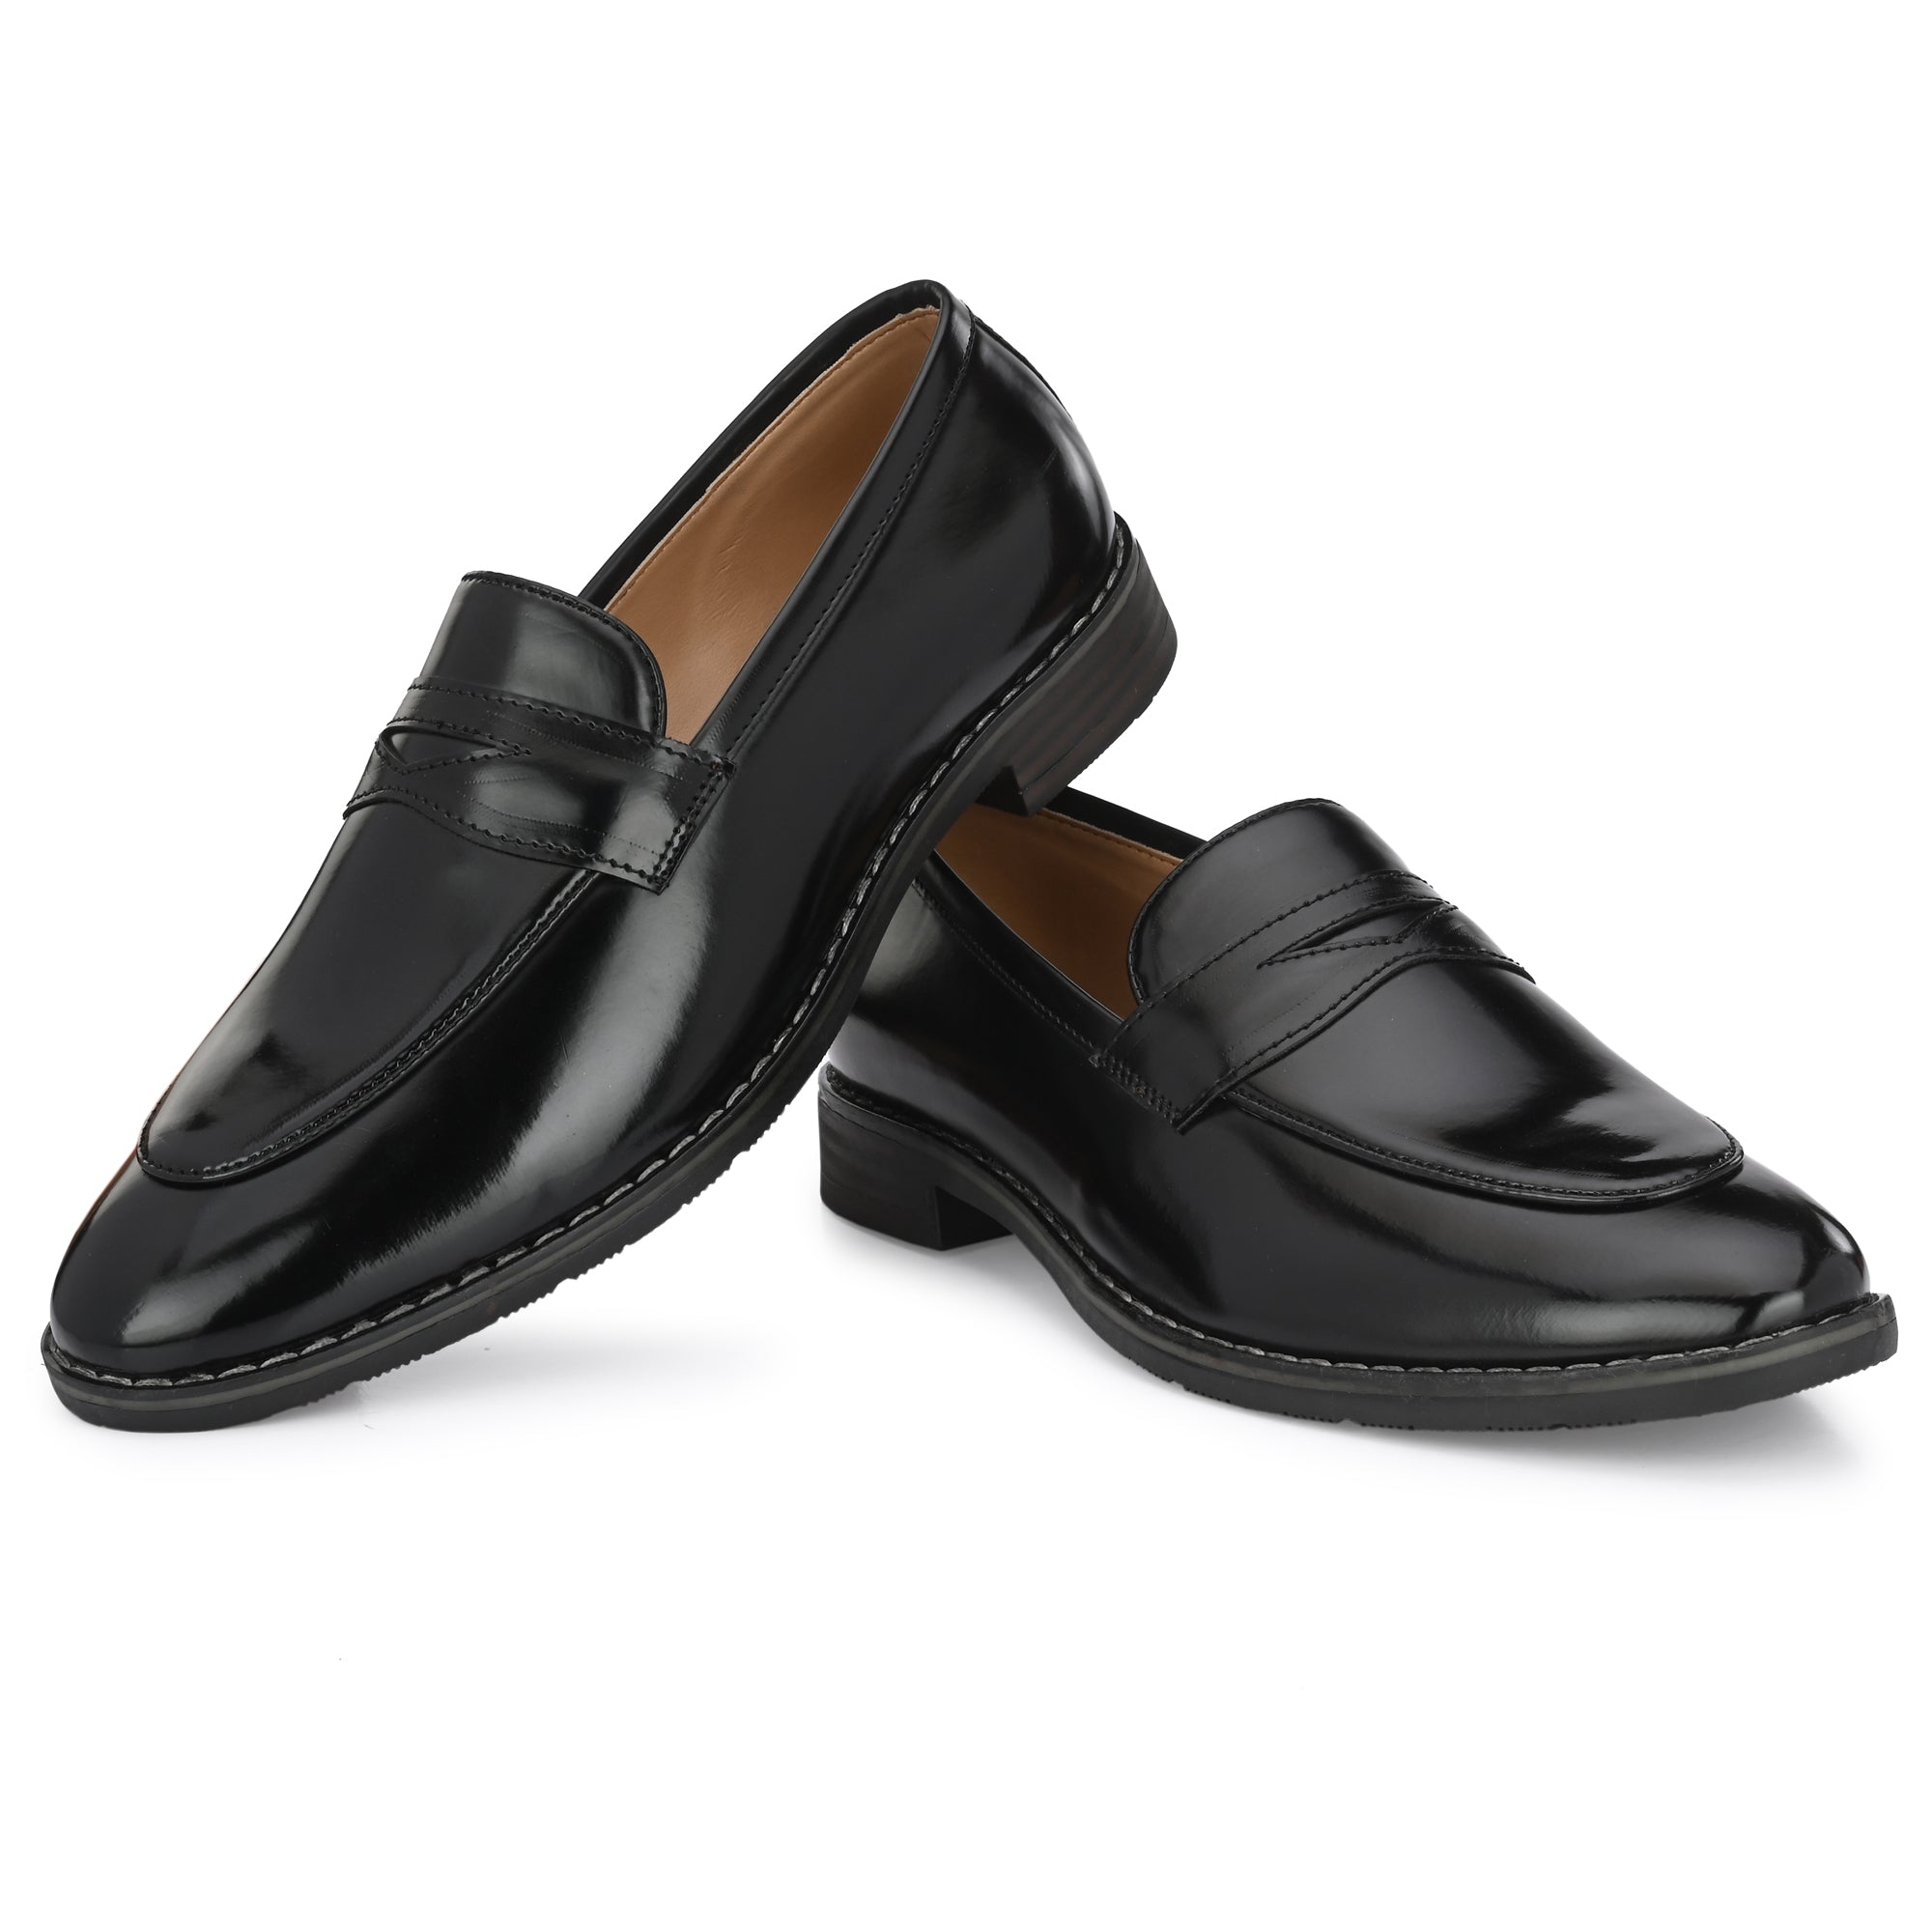 black-loafers-attitudist-shoes-for-men-sp8a